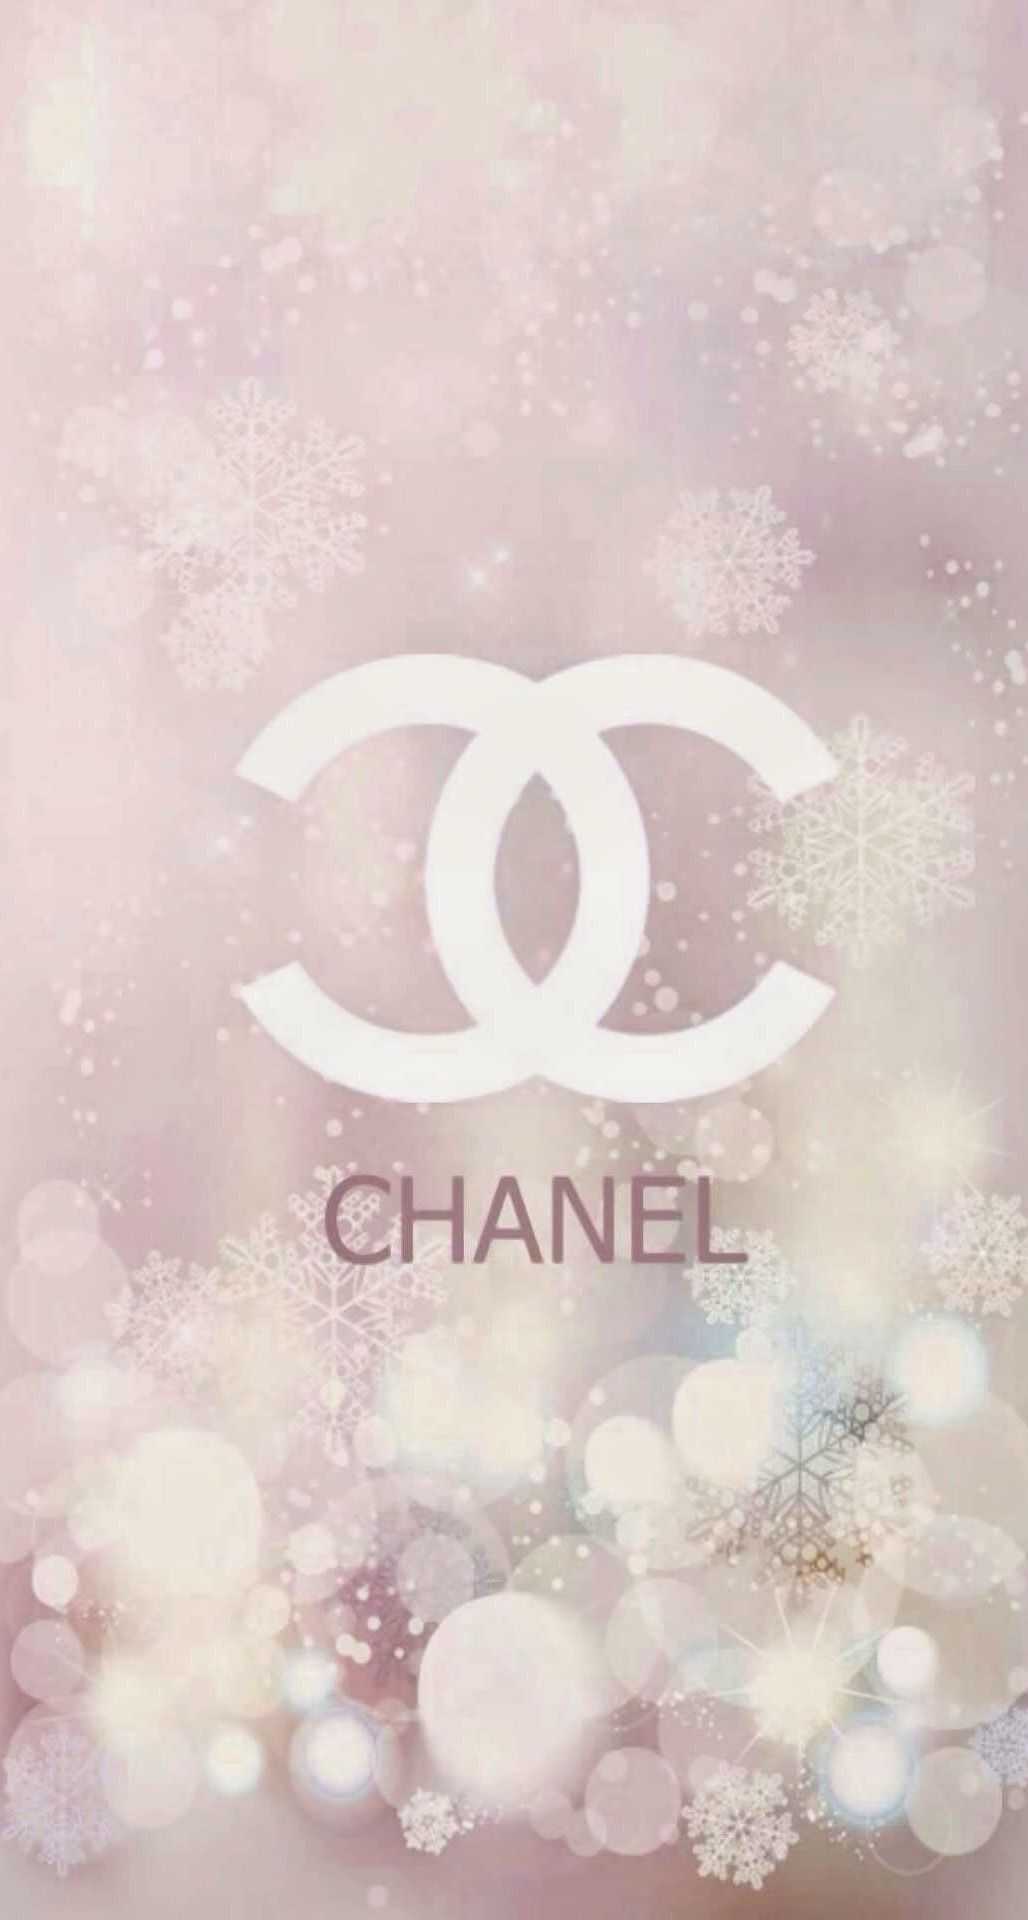 Aesthetic Chanel Wallpaper Free HD Wallpaper